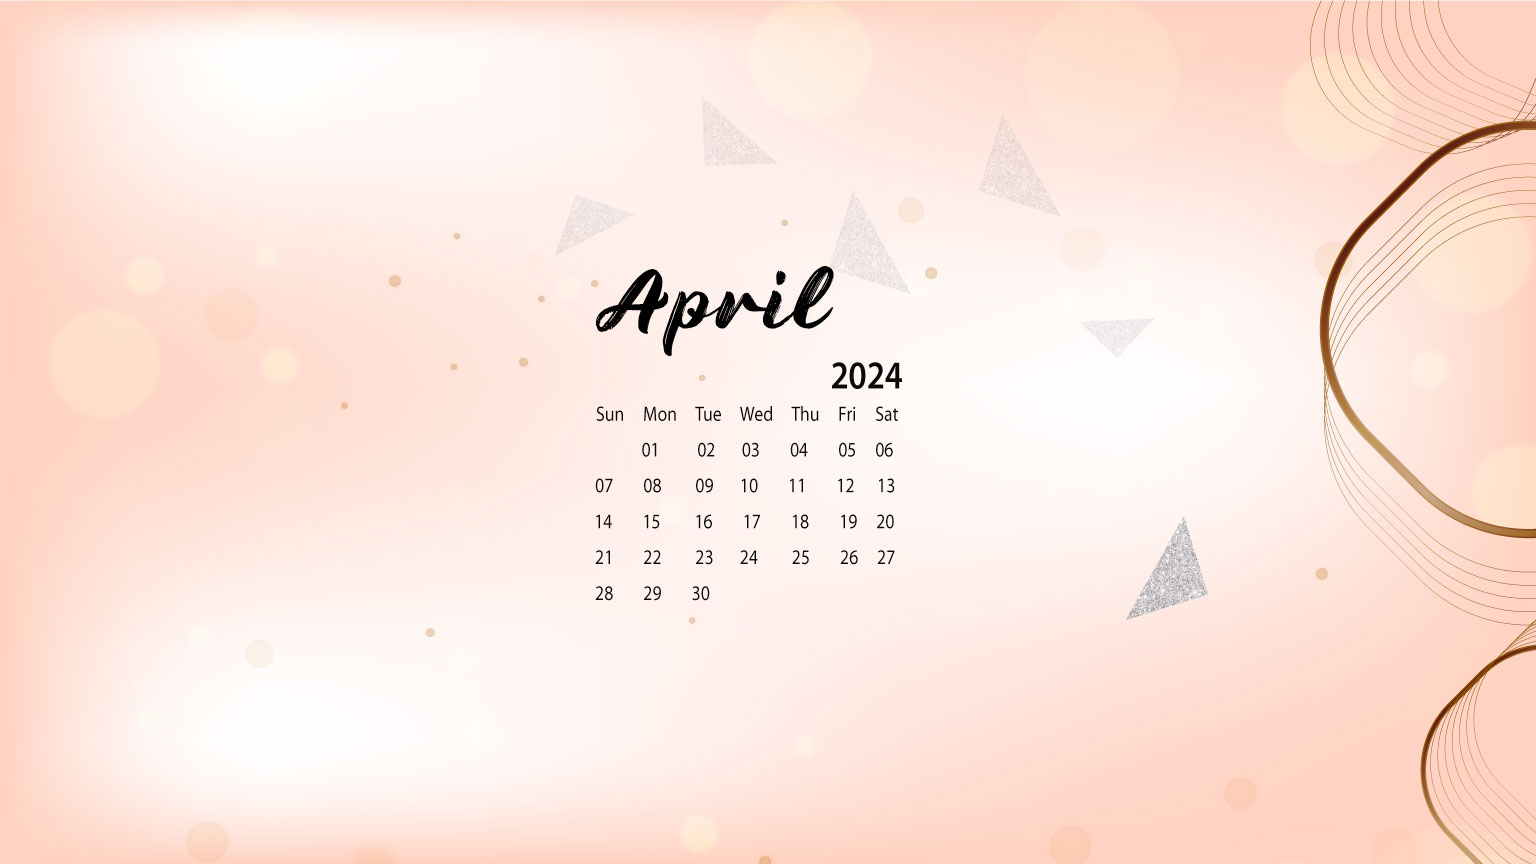 Tháng 4 là một tháng tuyệt vời để bắt đầu một thời kỳ mới. Hãy trang trí màn hình desktop của bạn với lịch desktop tháng 4 năm 2024 từ CalendarLabs. Với thiết kế đẹp mắt và dễ sử dụng, sản phẩm này sẽ là người bạn đồng hành tuyệt vời để bạn bắt đầu mọi dự án mới.